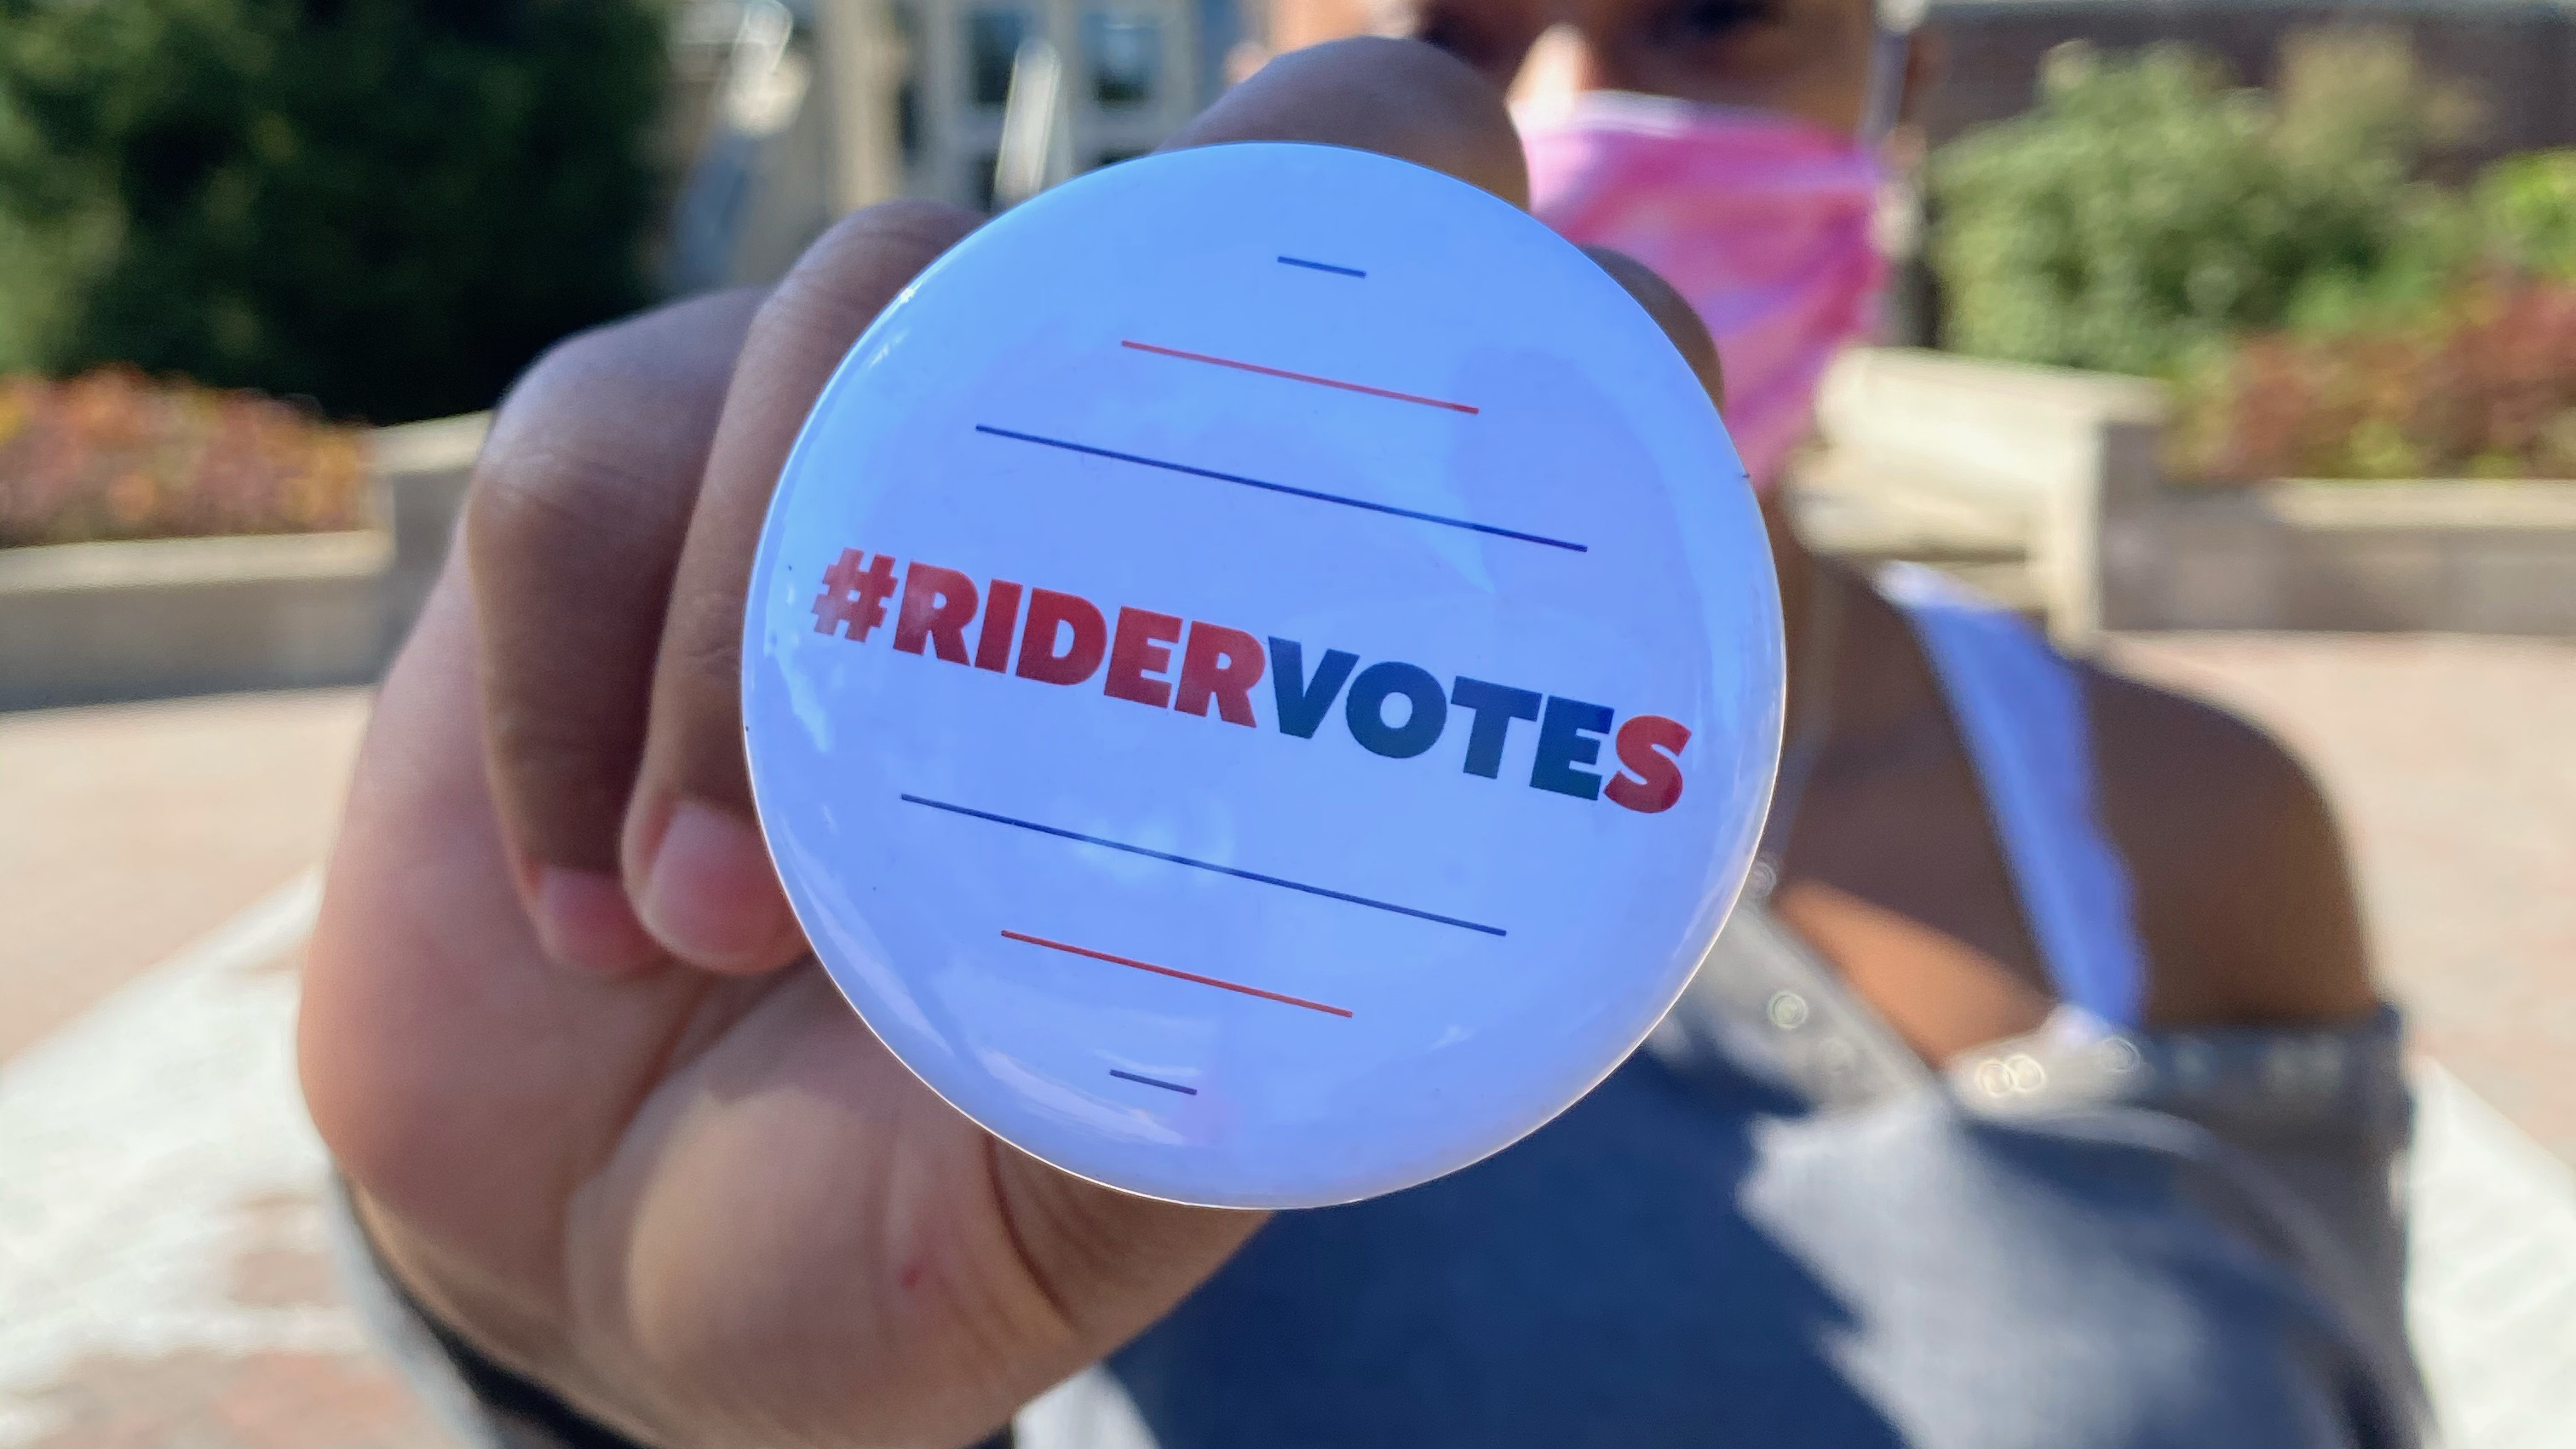 Rider Votes